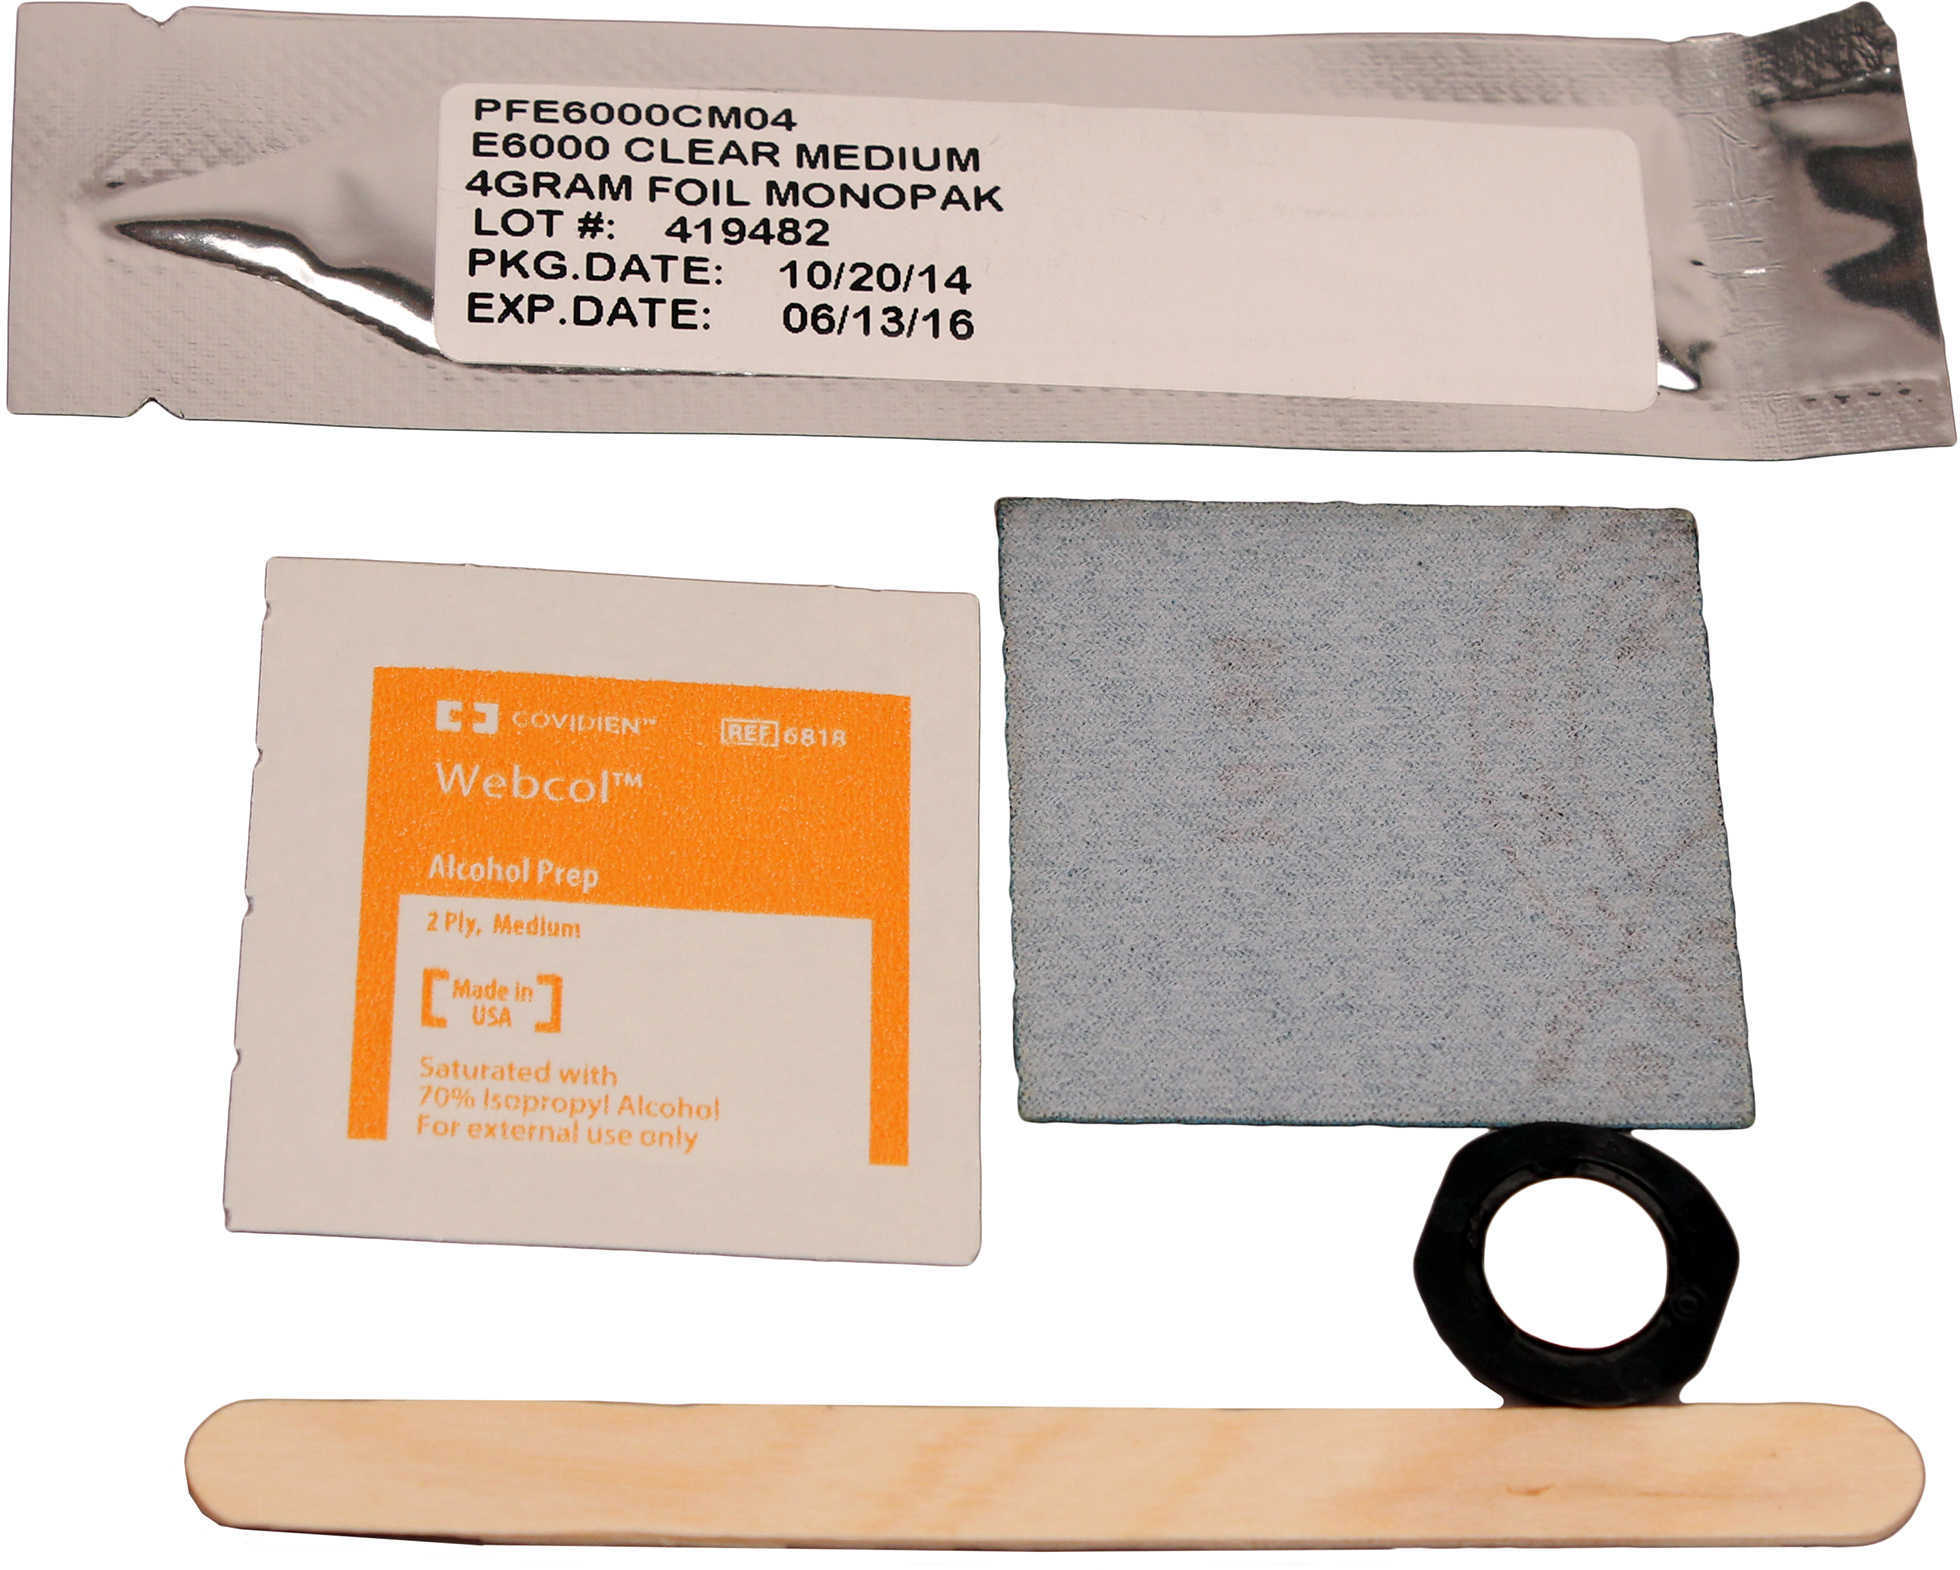 VIR 800-0010 ECR Instant-On Holster Kit